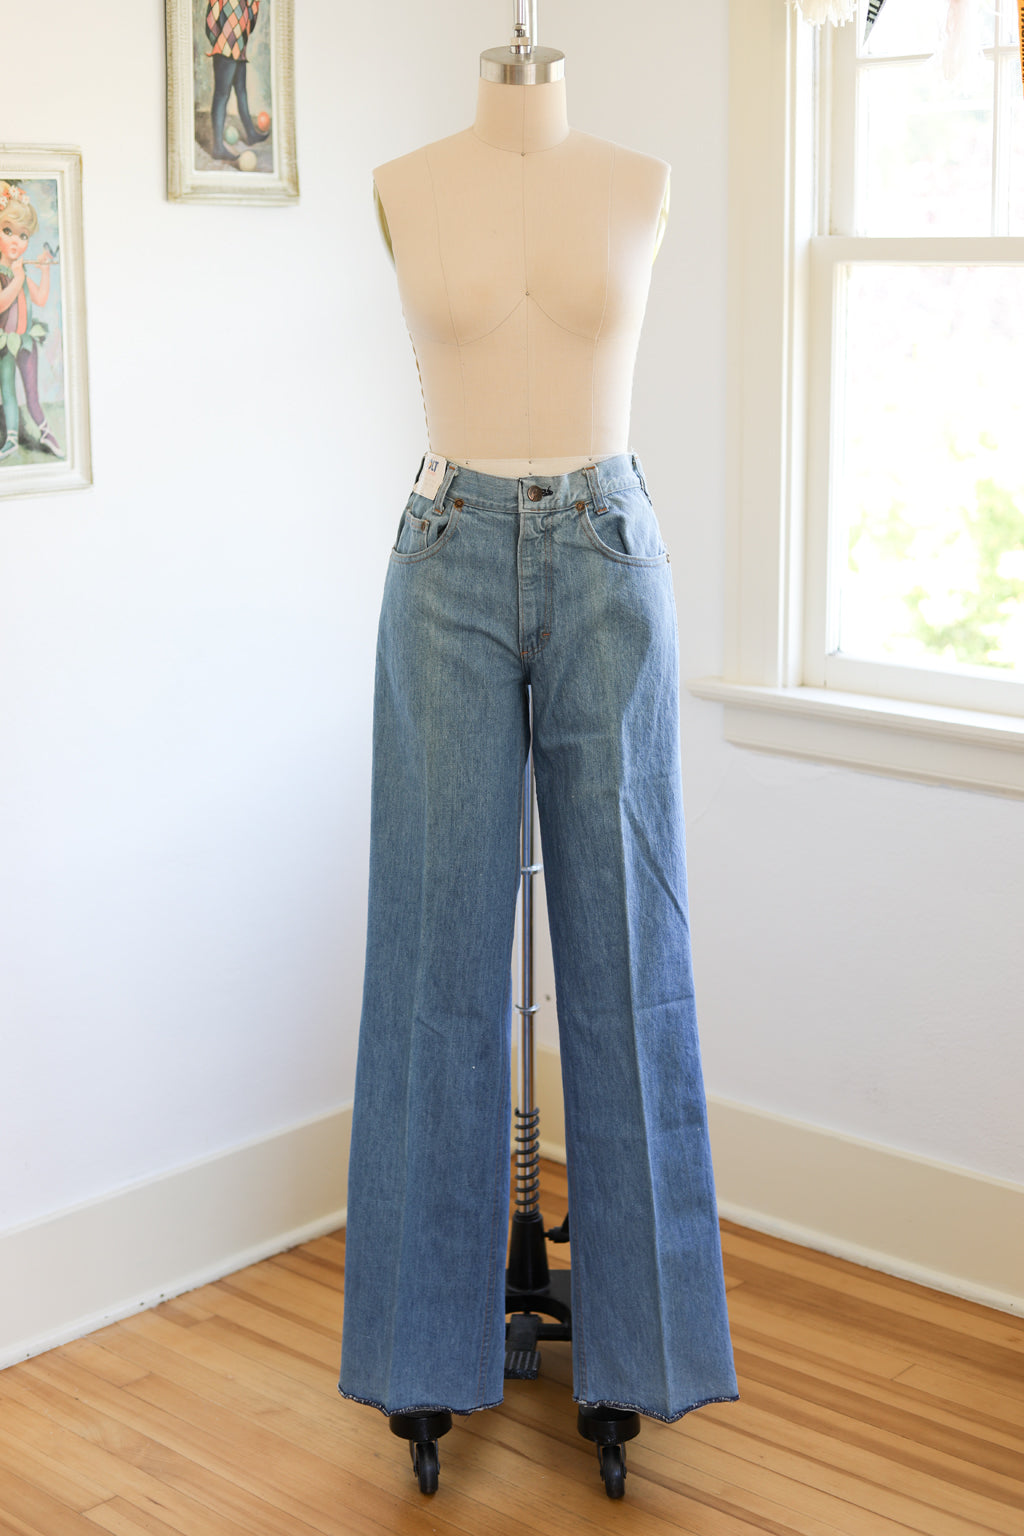 Rare 1970s Light Wash Bell Bottom Jeans – 3 Women